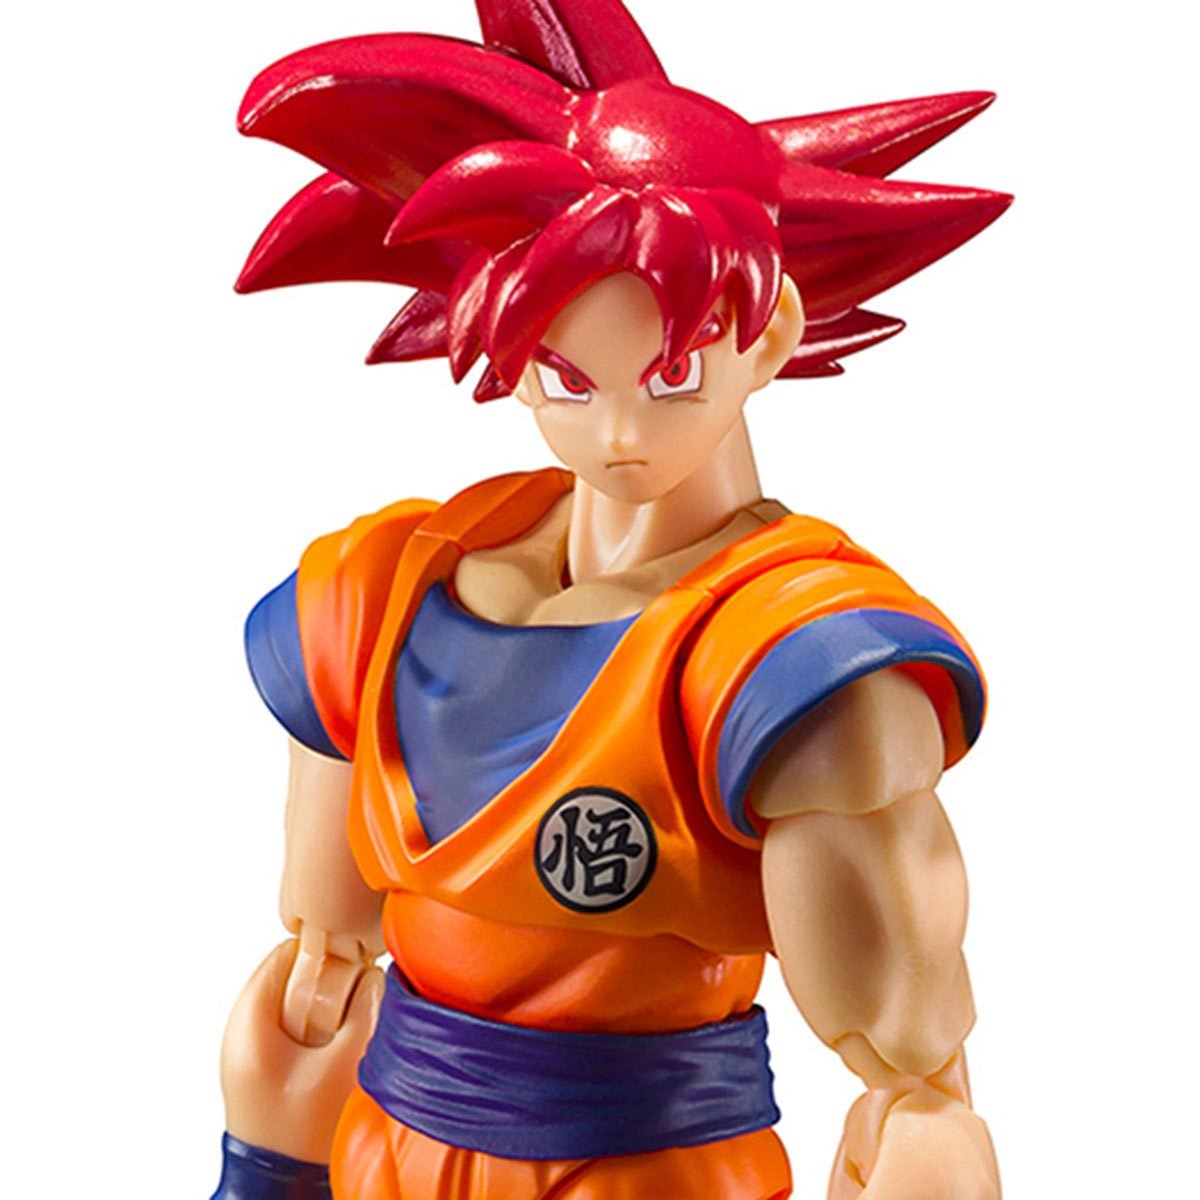 SHF Dragon Ball Z Super Saiyan God Red Hair Son Goku 6 Action